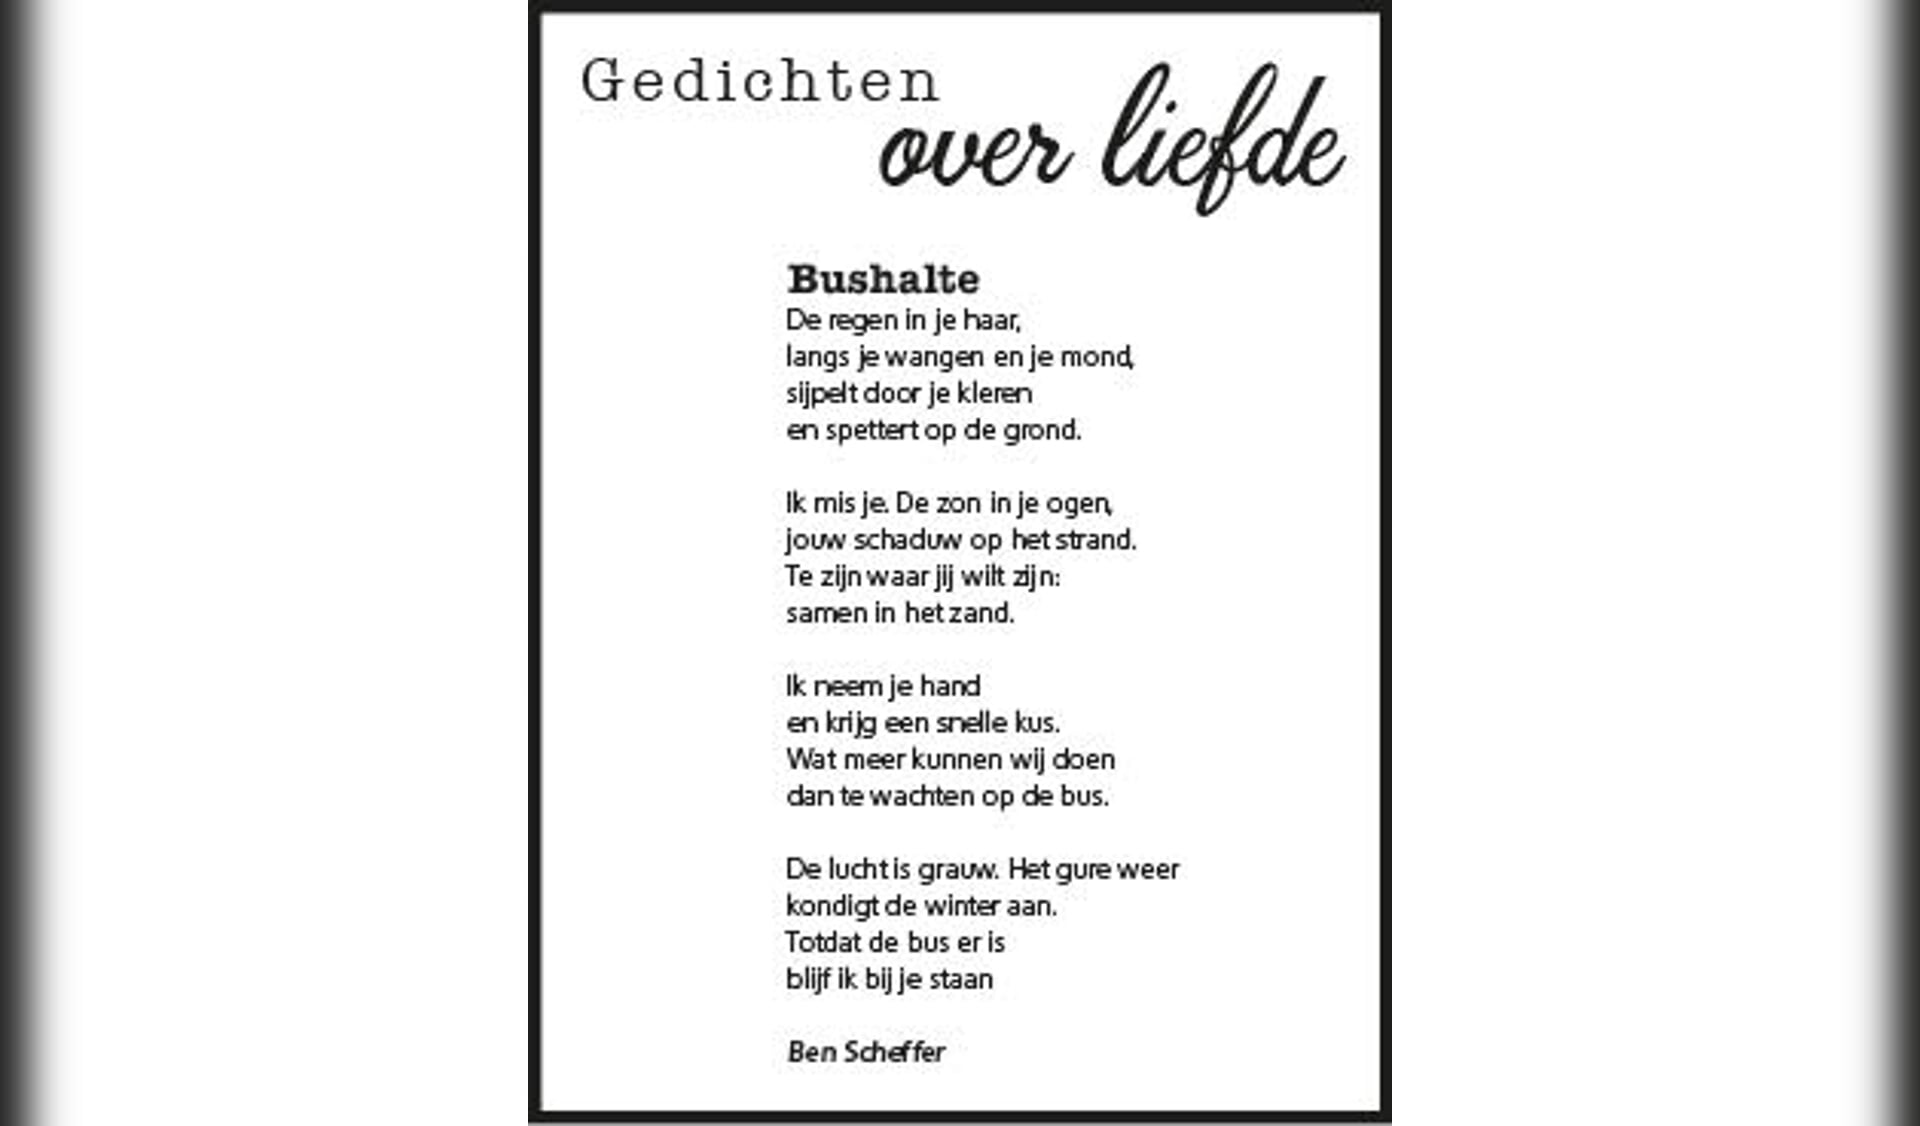 Gedicht van Ben Scheffer over De Liefde.